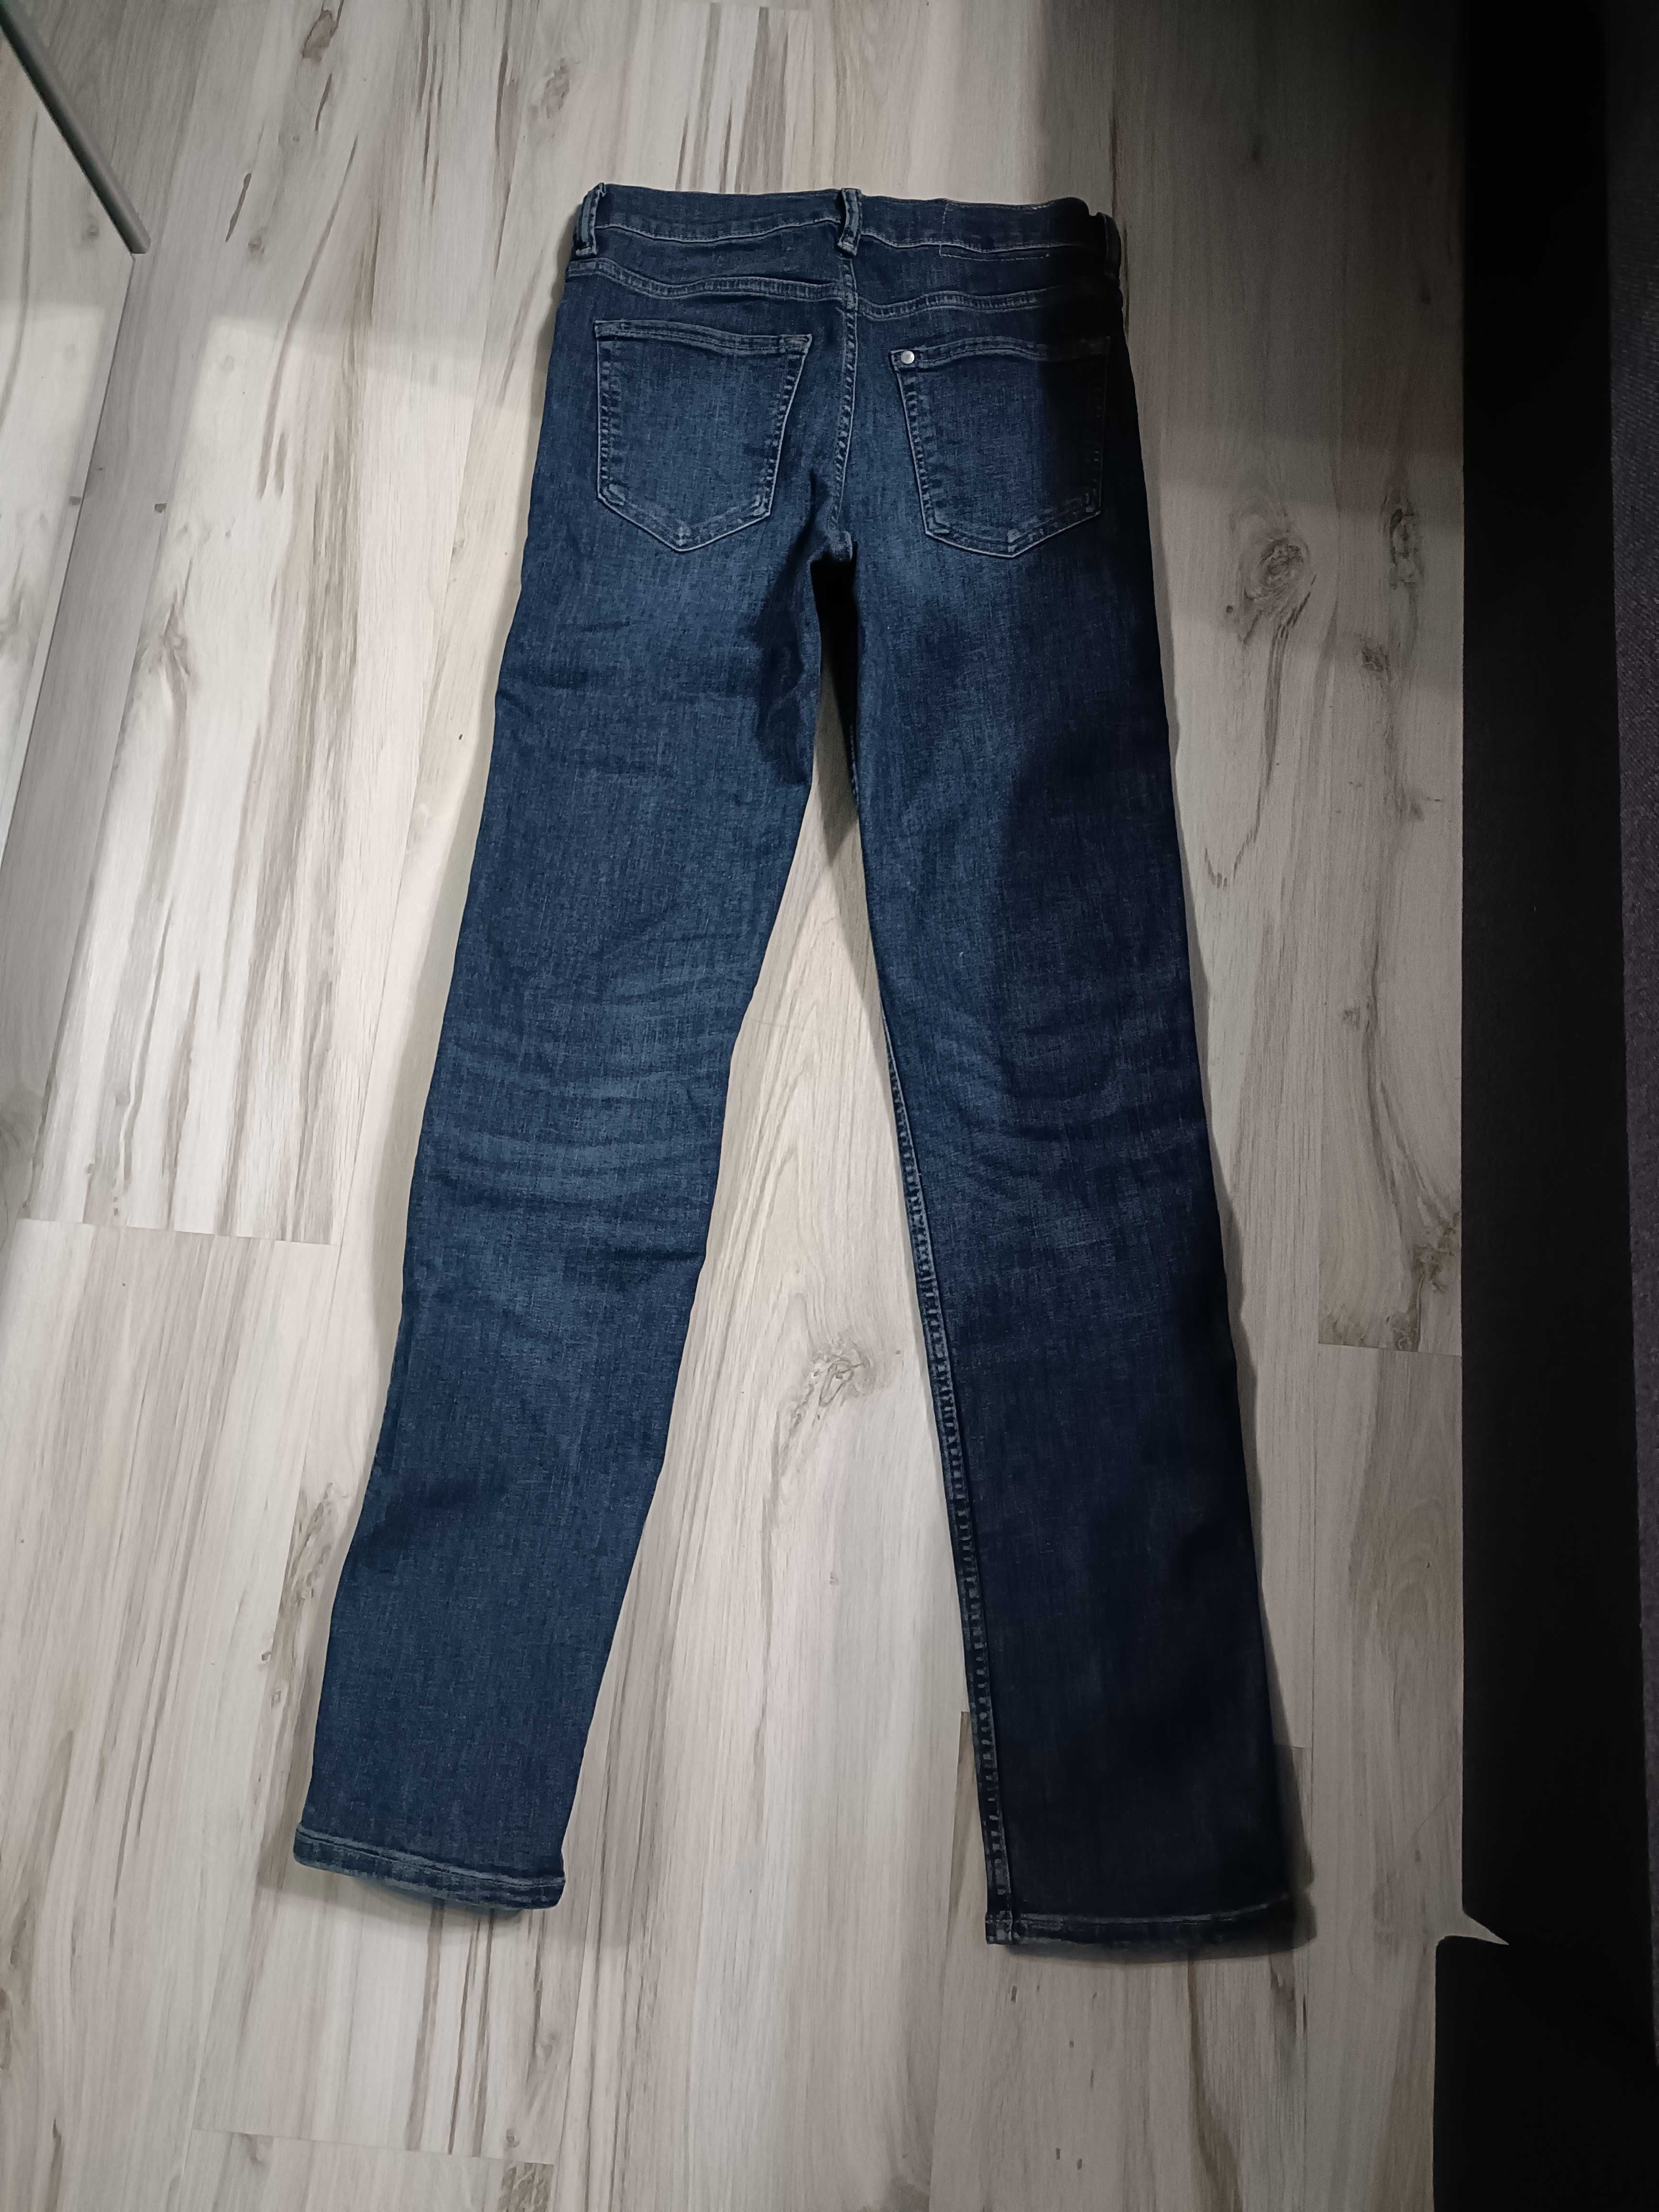 2 pary męskich jeansów rozm. 29/32 H&M